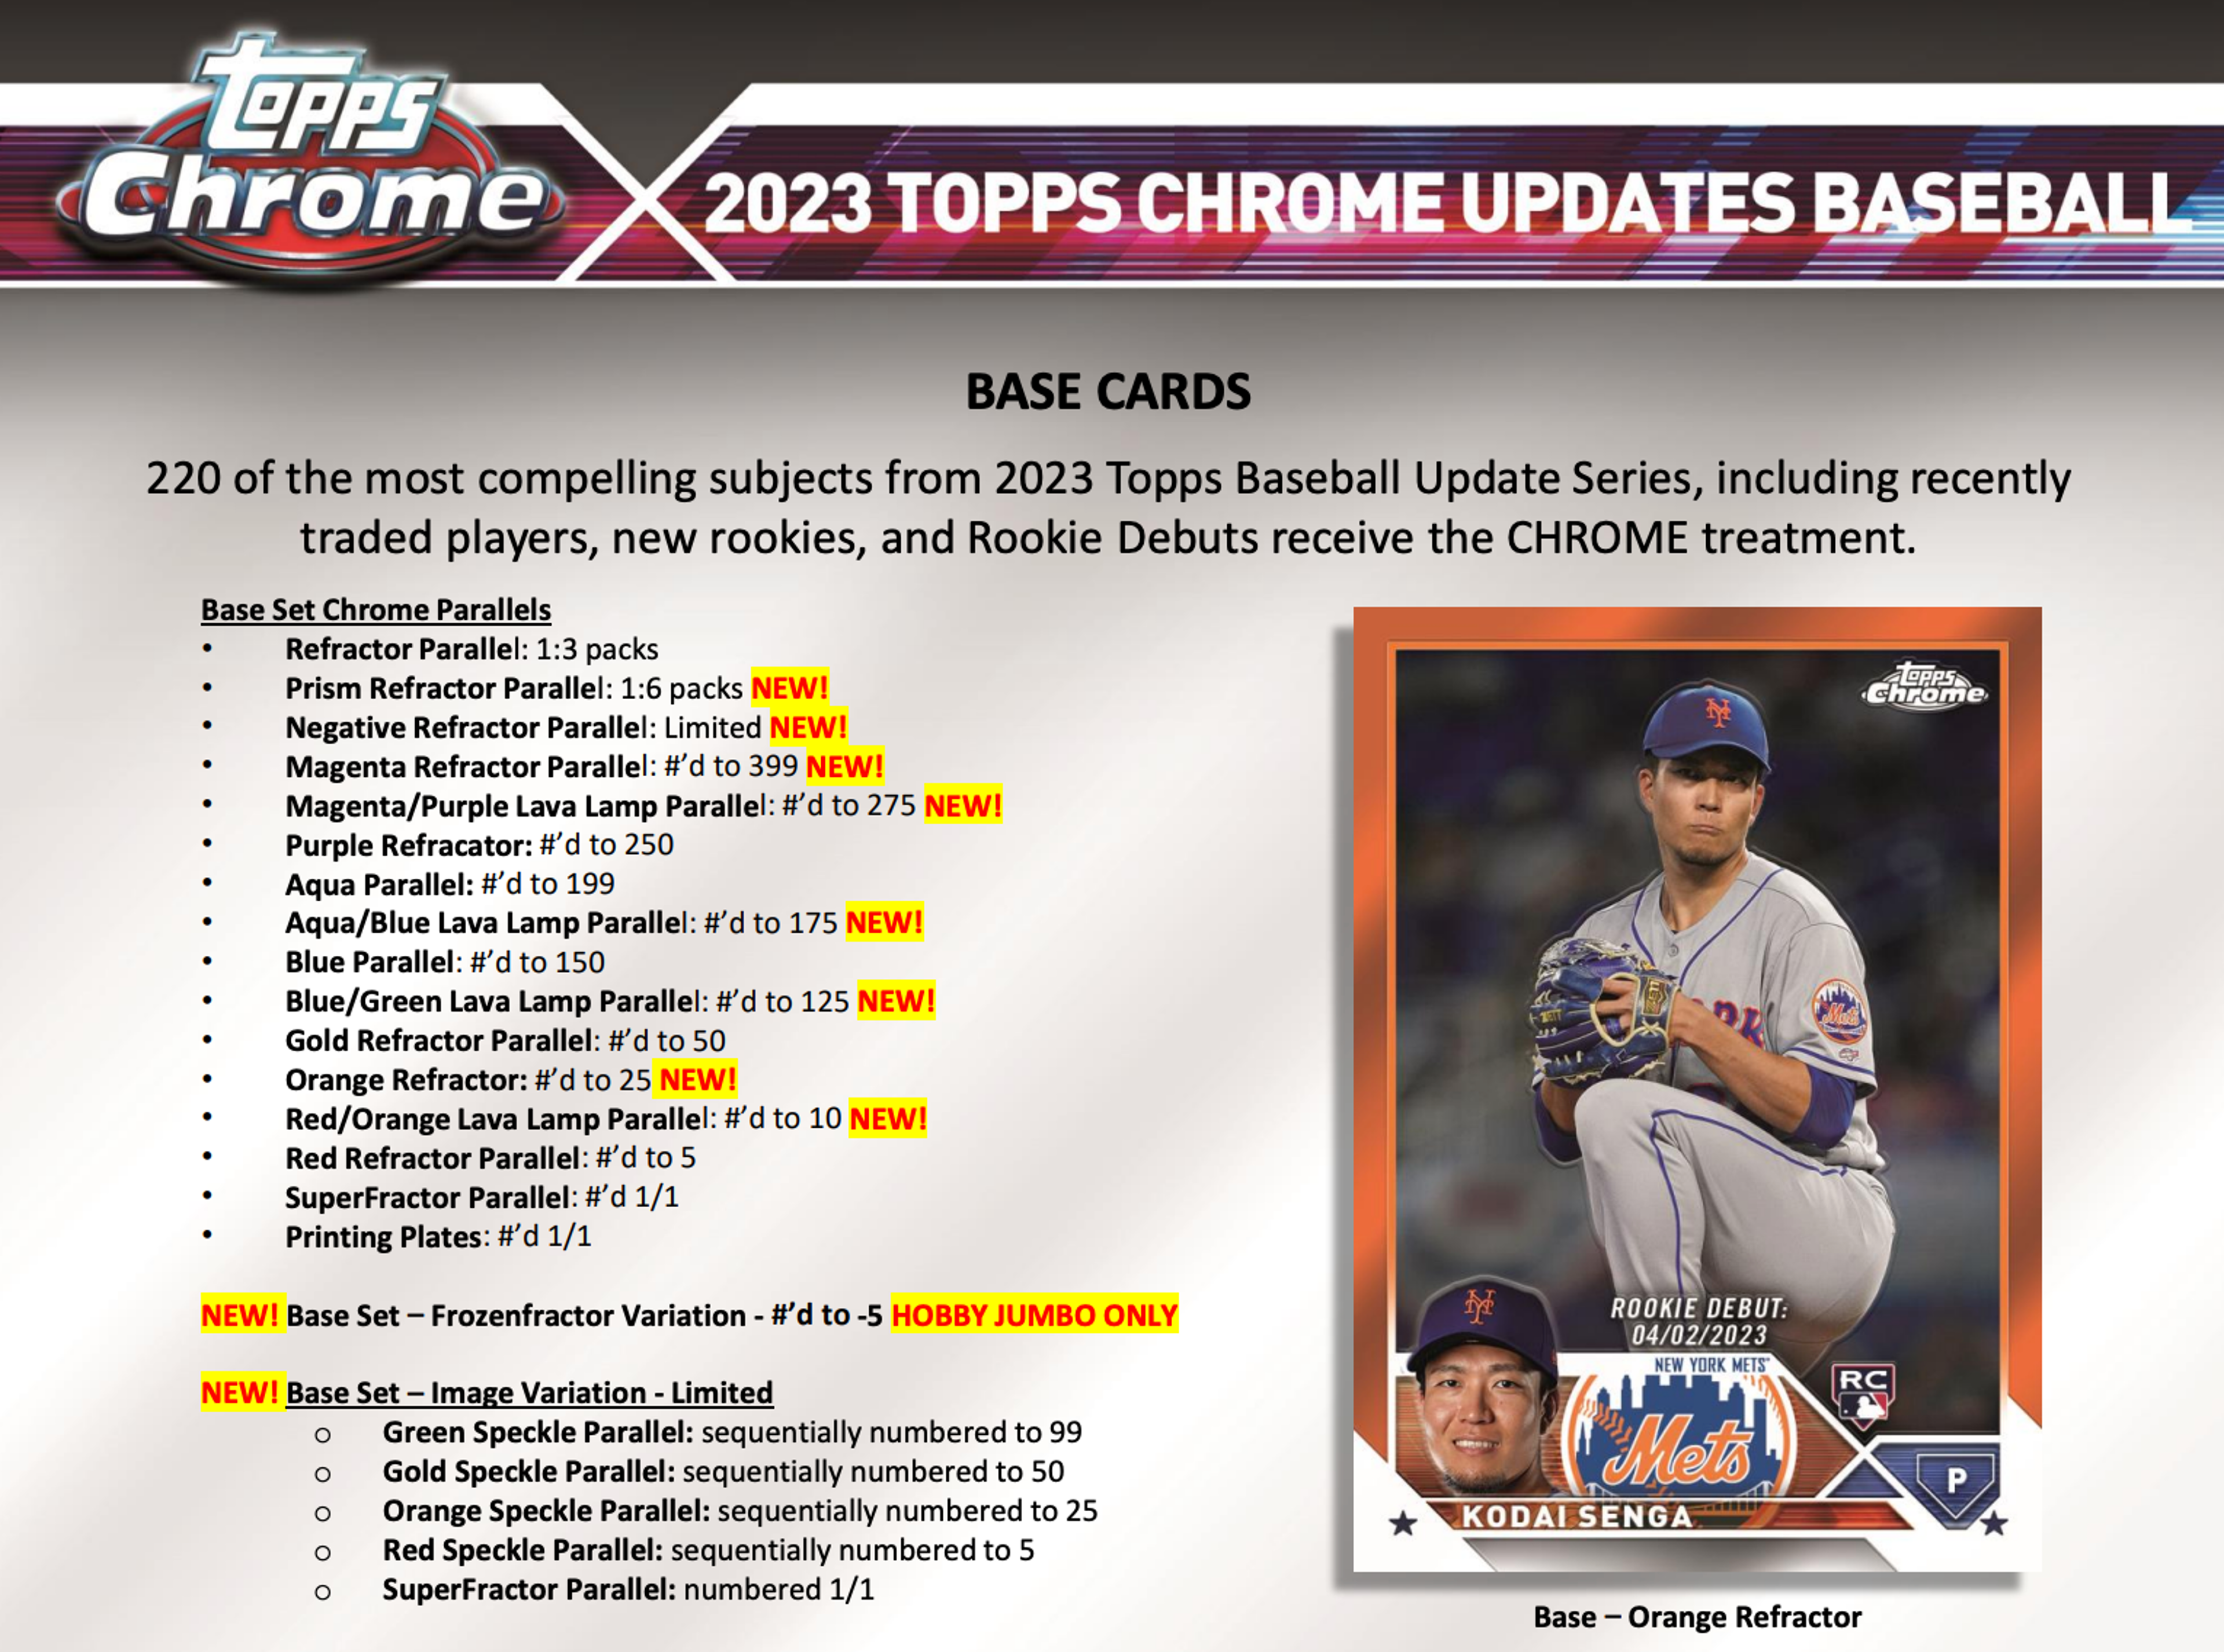 Alternate View 2 of 2023 Topps Chrome Update Baseball Hobby Box